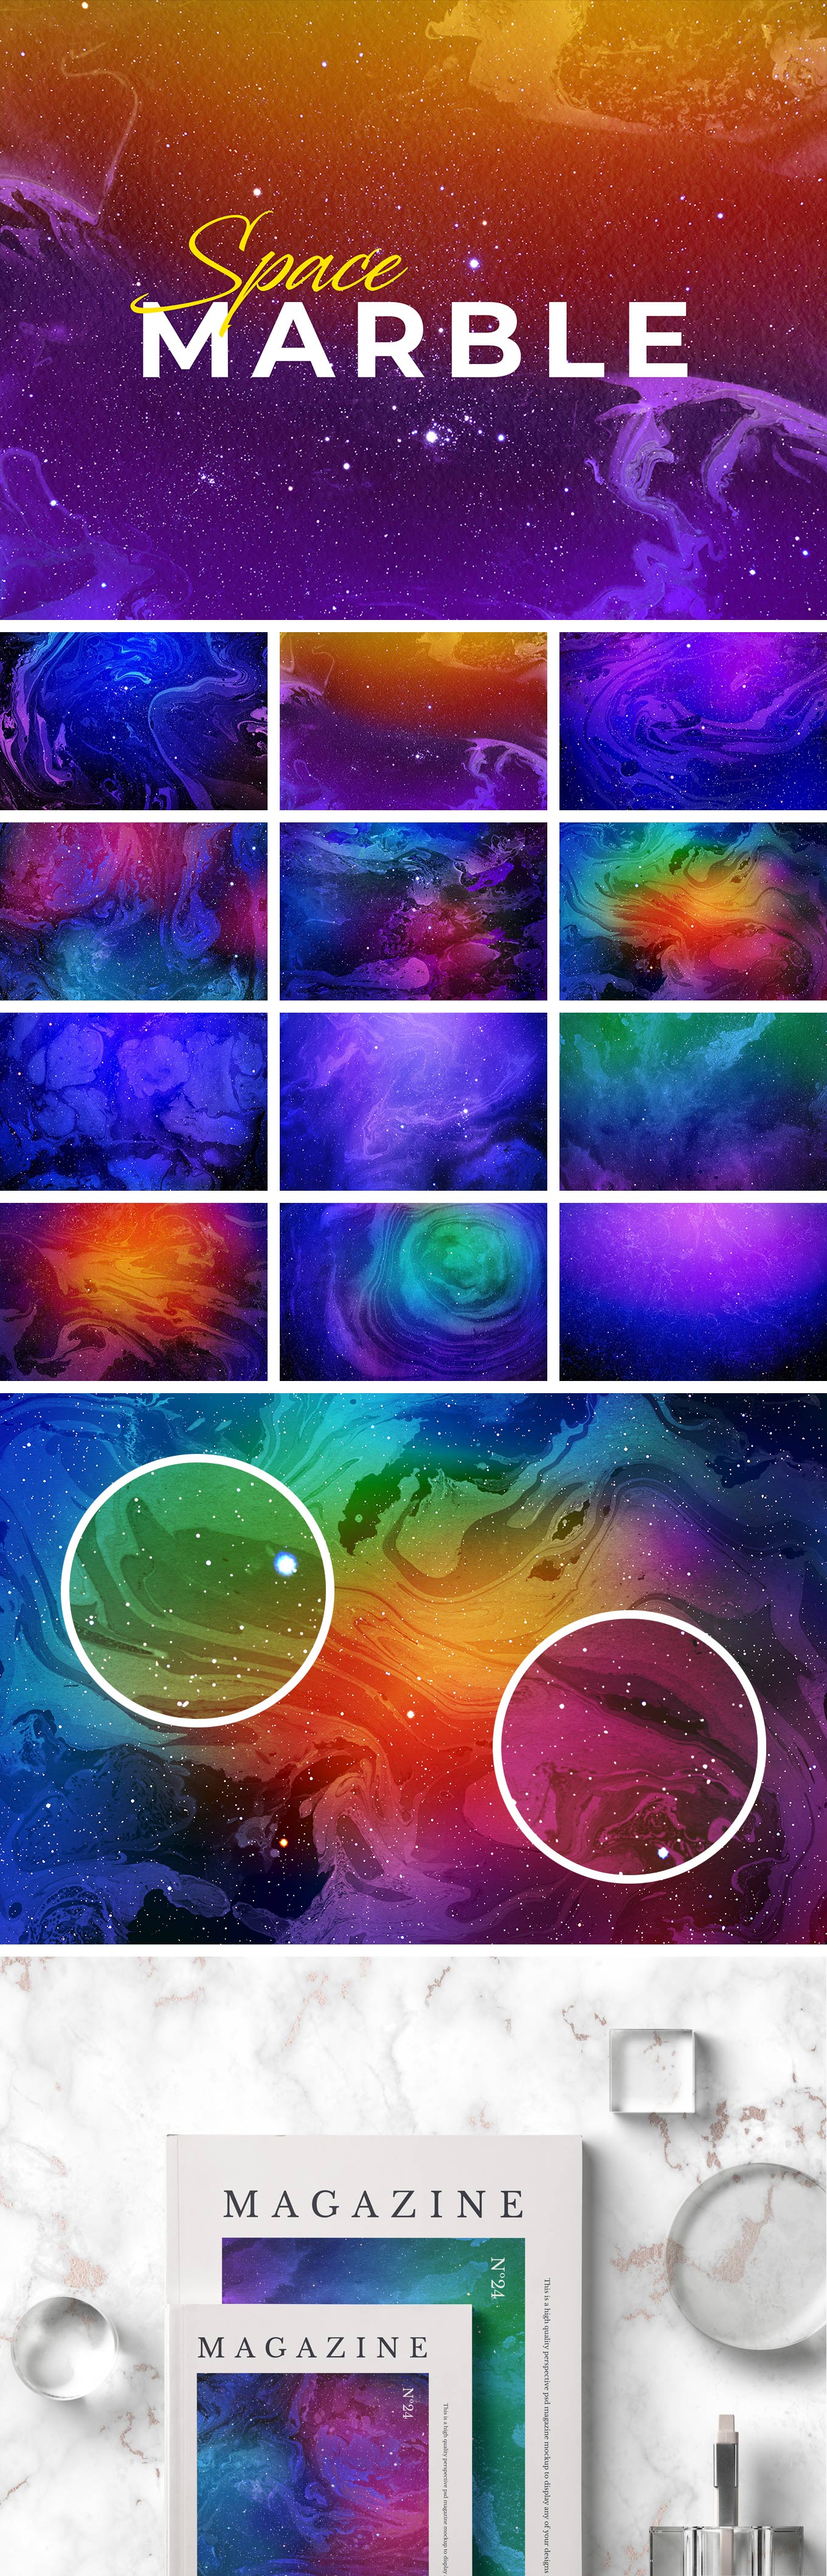 星光灿烂的空间大理石背景纹理 Space Marble Backgrounds Set插图